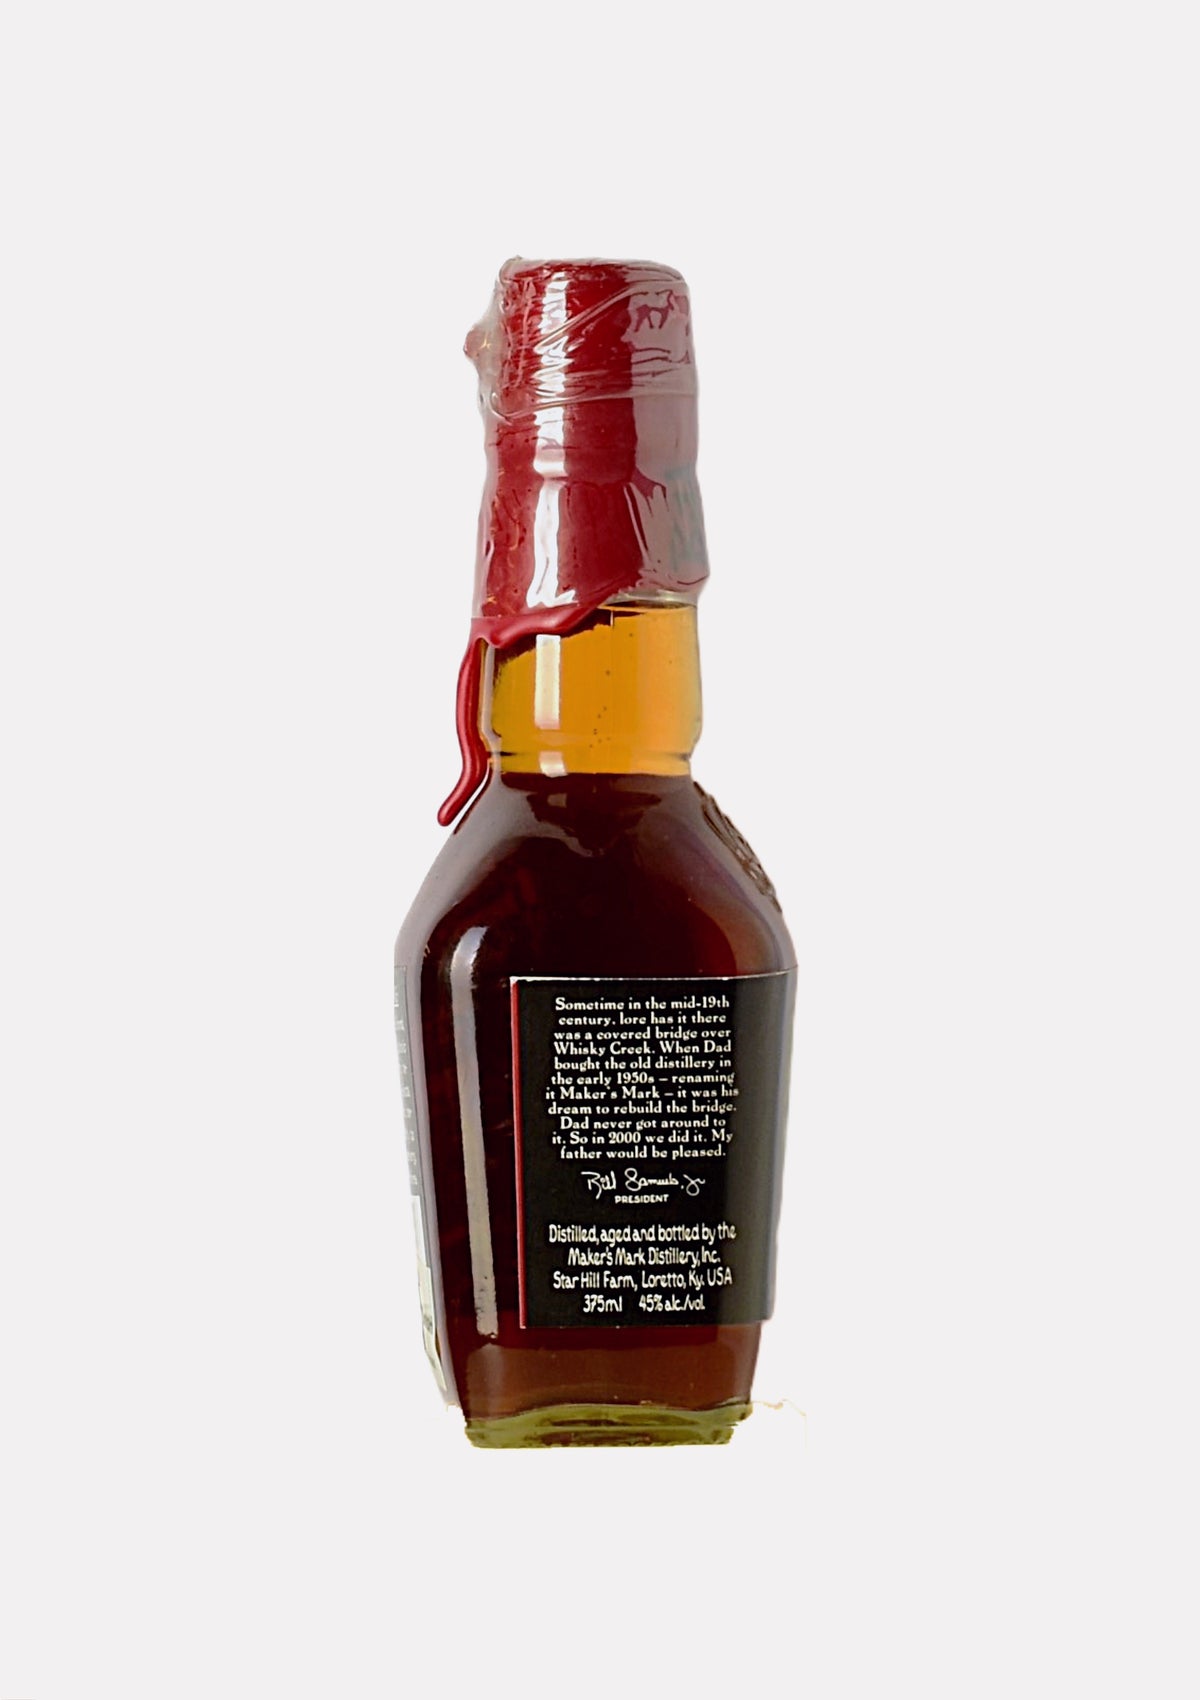 Maker`s Mark Whiskey Creek Kentucky Straight Bourbon Whiskey 37.5 cl.